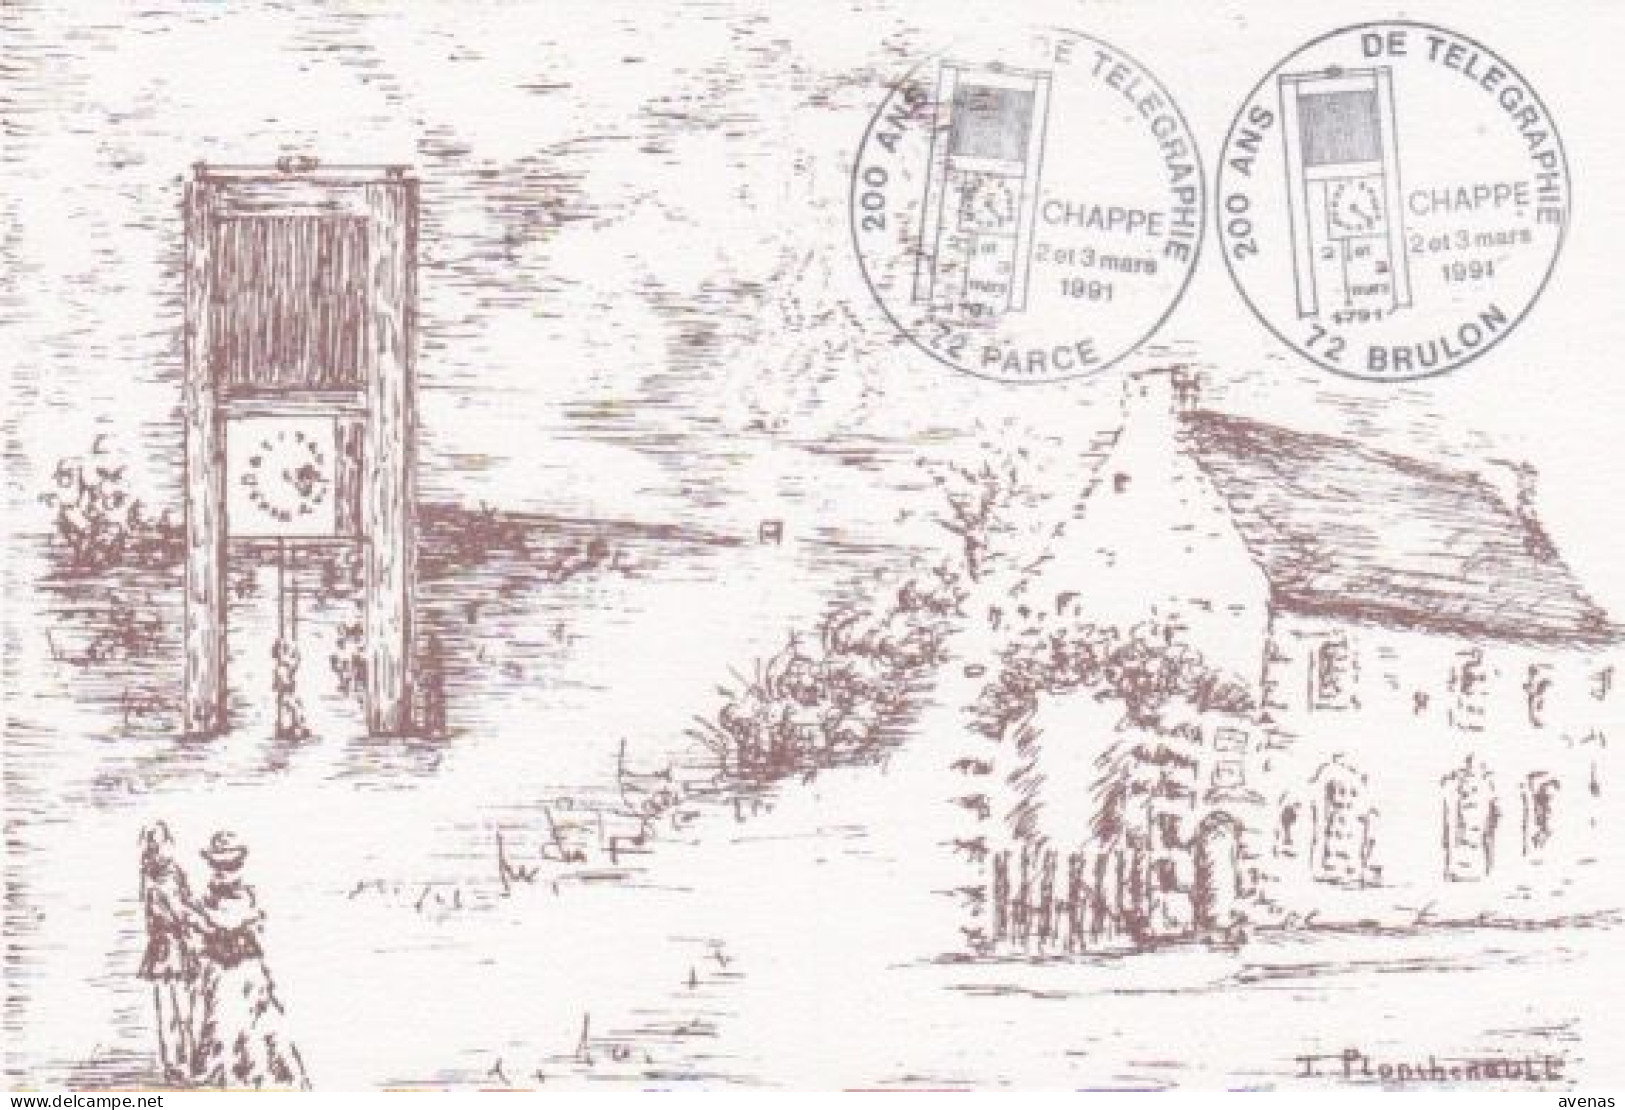 CPM Carte Postale Moderne 72 BRULON & PARCE Première Expérience 1791 Du Télégraphe Optique + Maison Natale De Chappe - Brulon